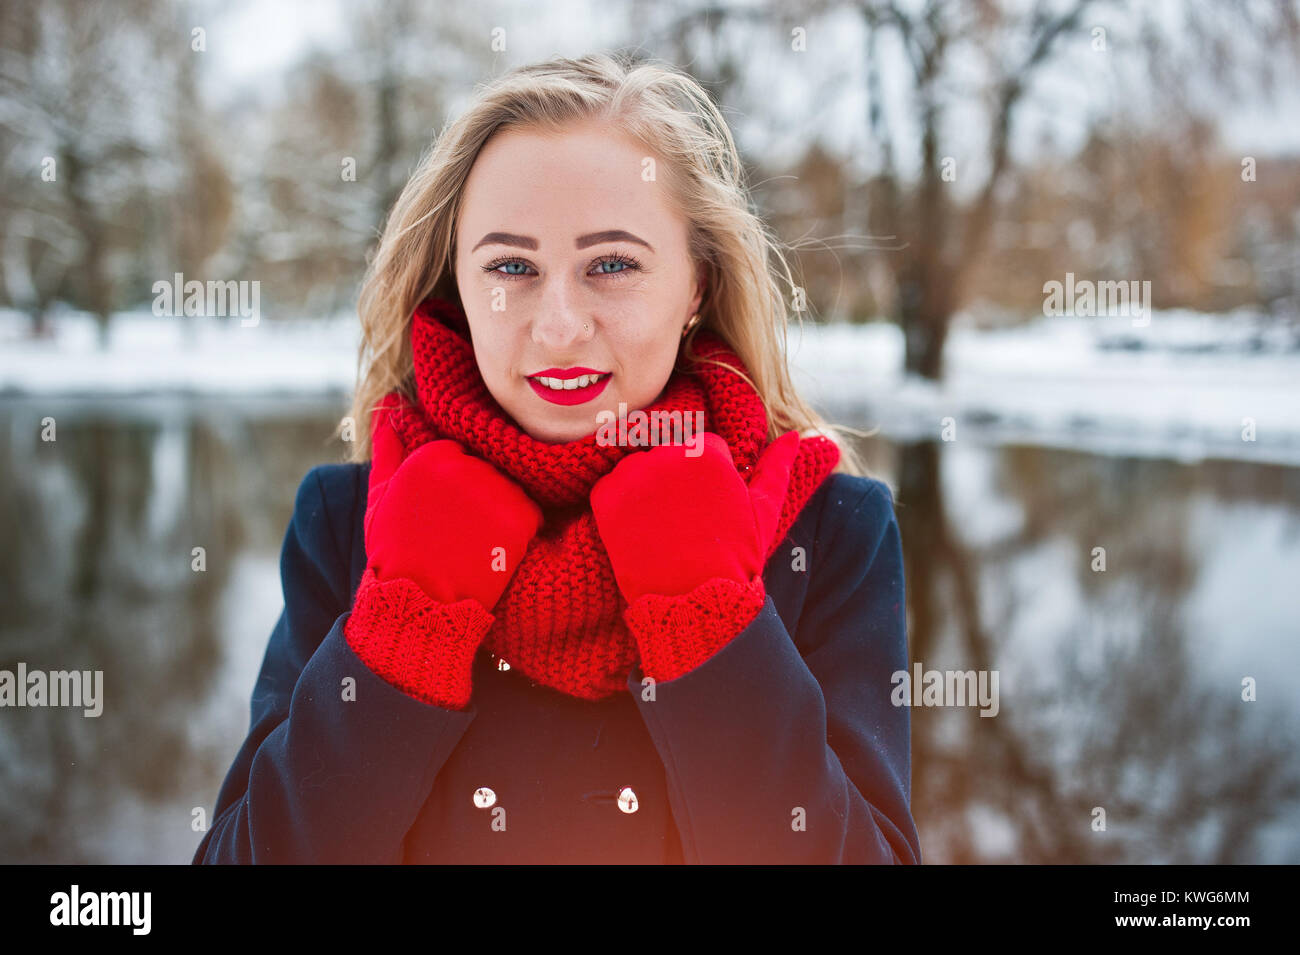 Portrai des blonden Mädchen in roten Schal und Mantel gegen zugefrorenen See im Winter Tag. Stockfoto